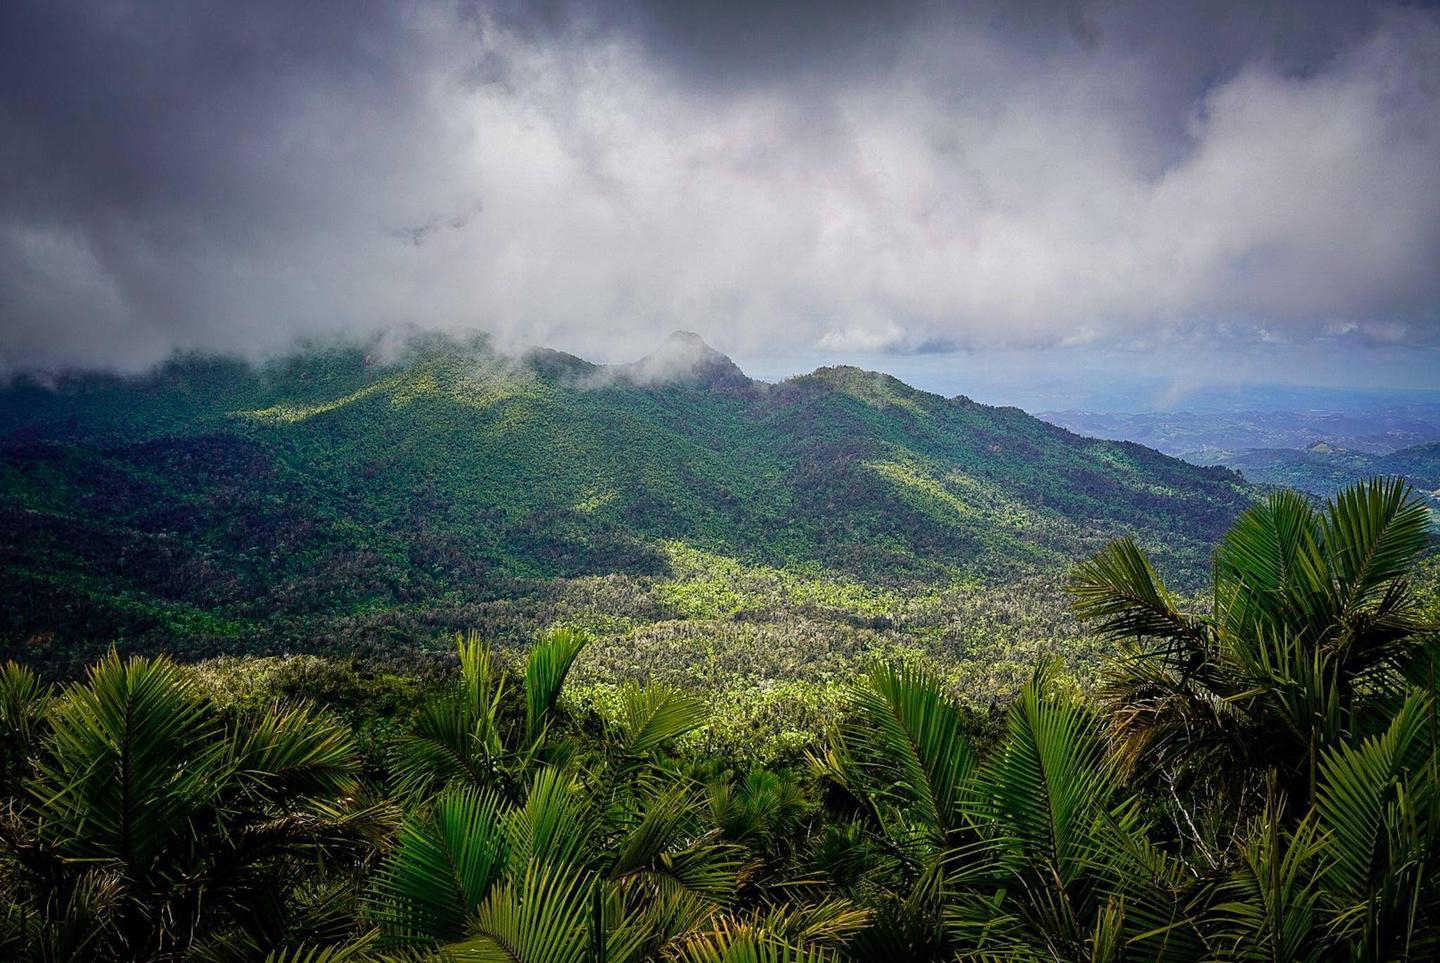 Las nubes se posan sobre el bosque tropical El Yunque.  Clouds settle in over El Yunque's tropical forest.Las nubes se posan sobre el bosque tropical El Yunque.  
Clouds settle in over El Yunque's tropical forest.